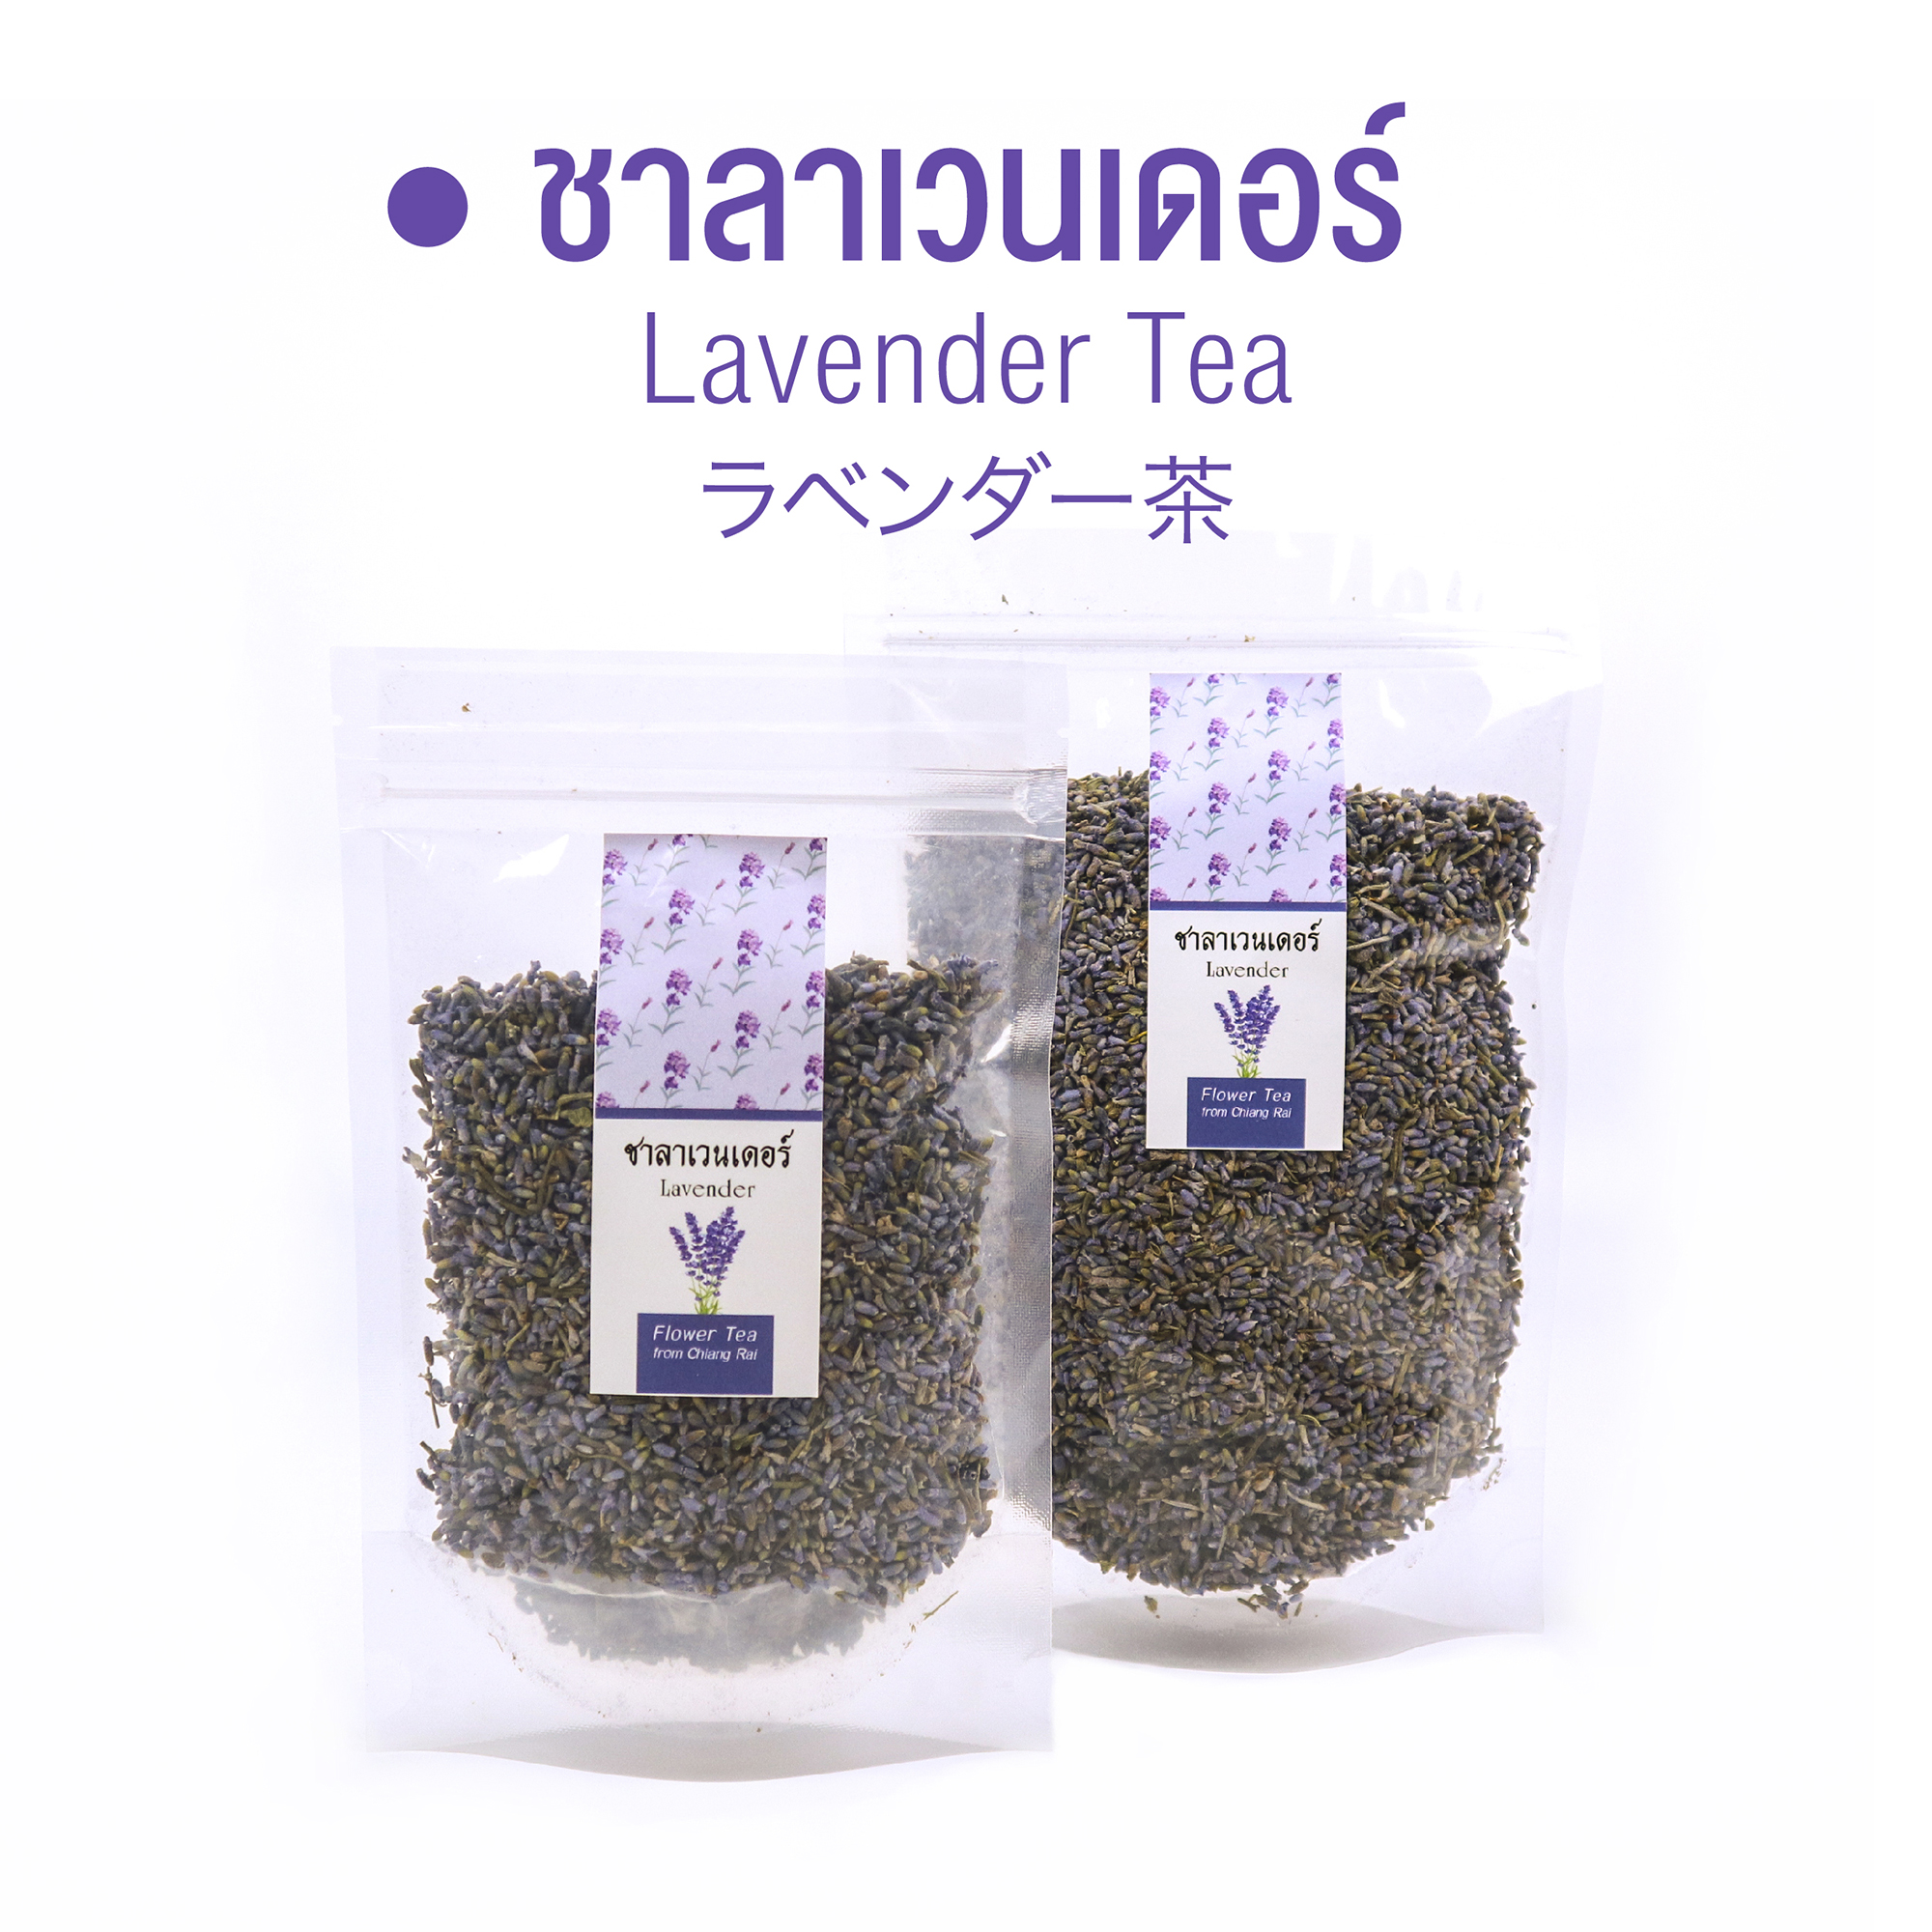 ชาลาเวนเดอร์ Lavender Tea